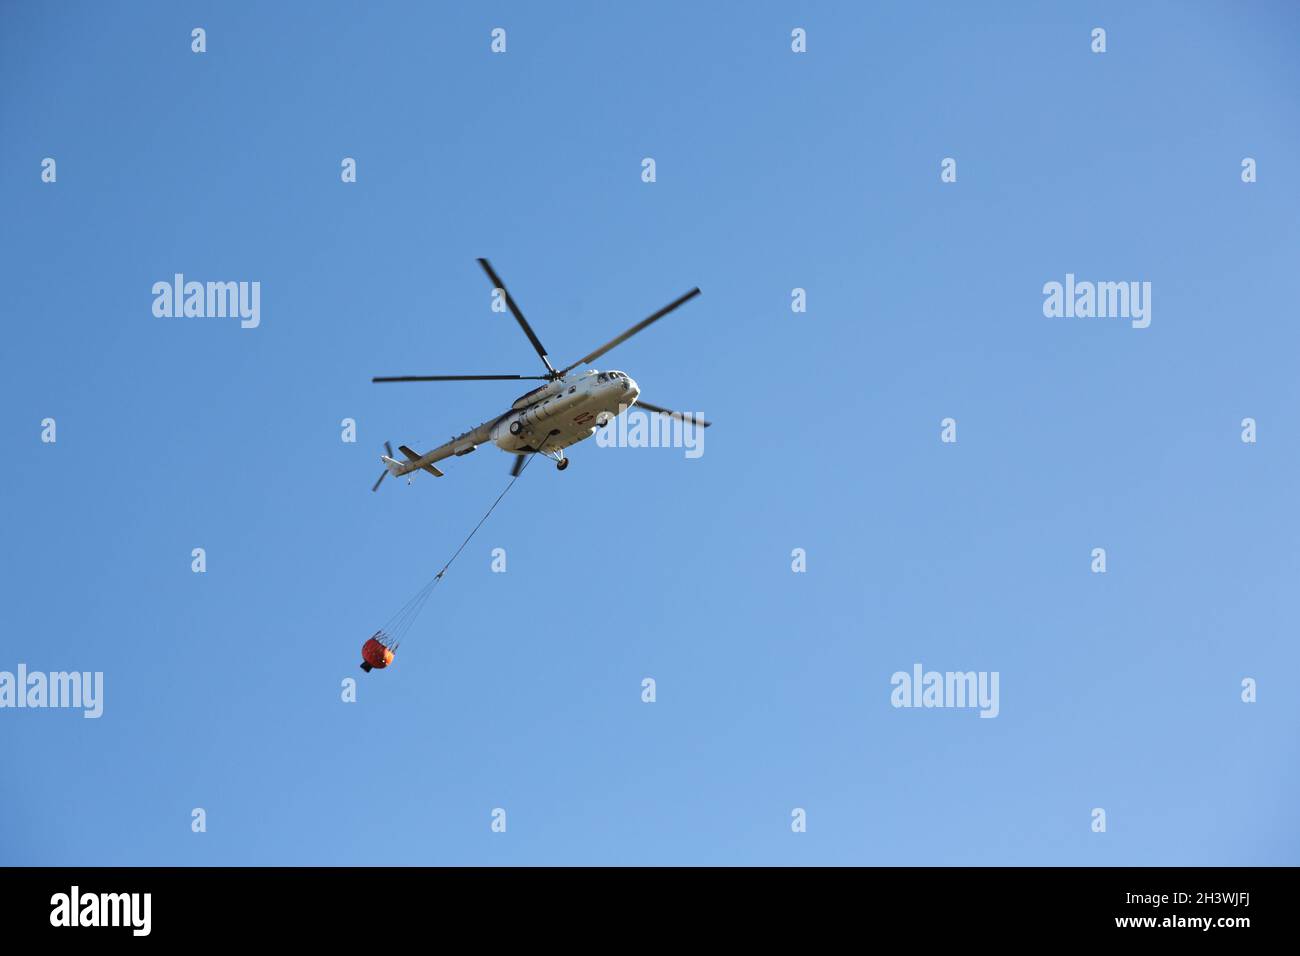 Hubschrauber fährt in den Feuerbereich, um Waldbrände zu löschen. Helikopter mit Wassereimer am blauen Himmel. Stockfoto